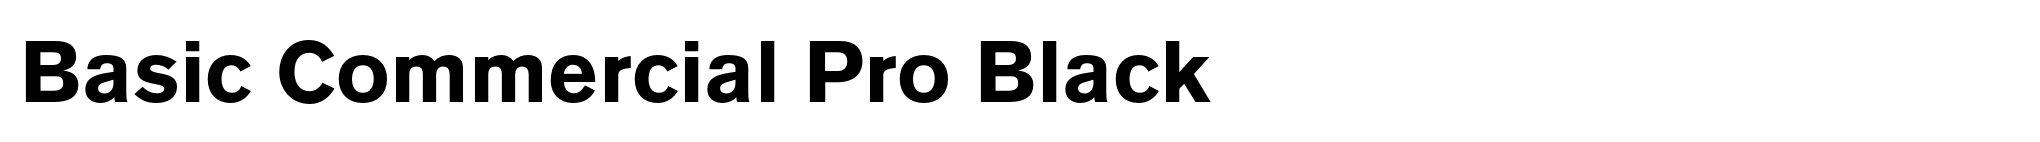 Basic Commercial Pro Black image